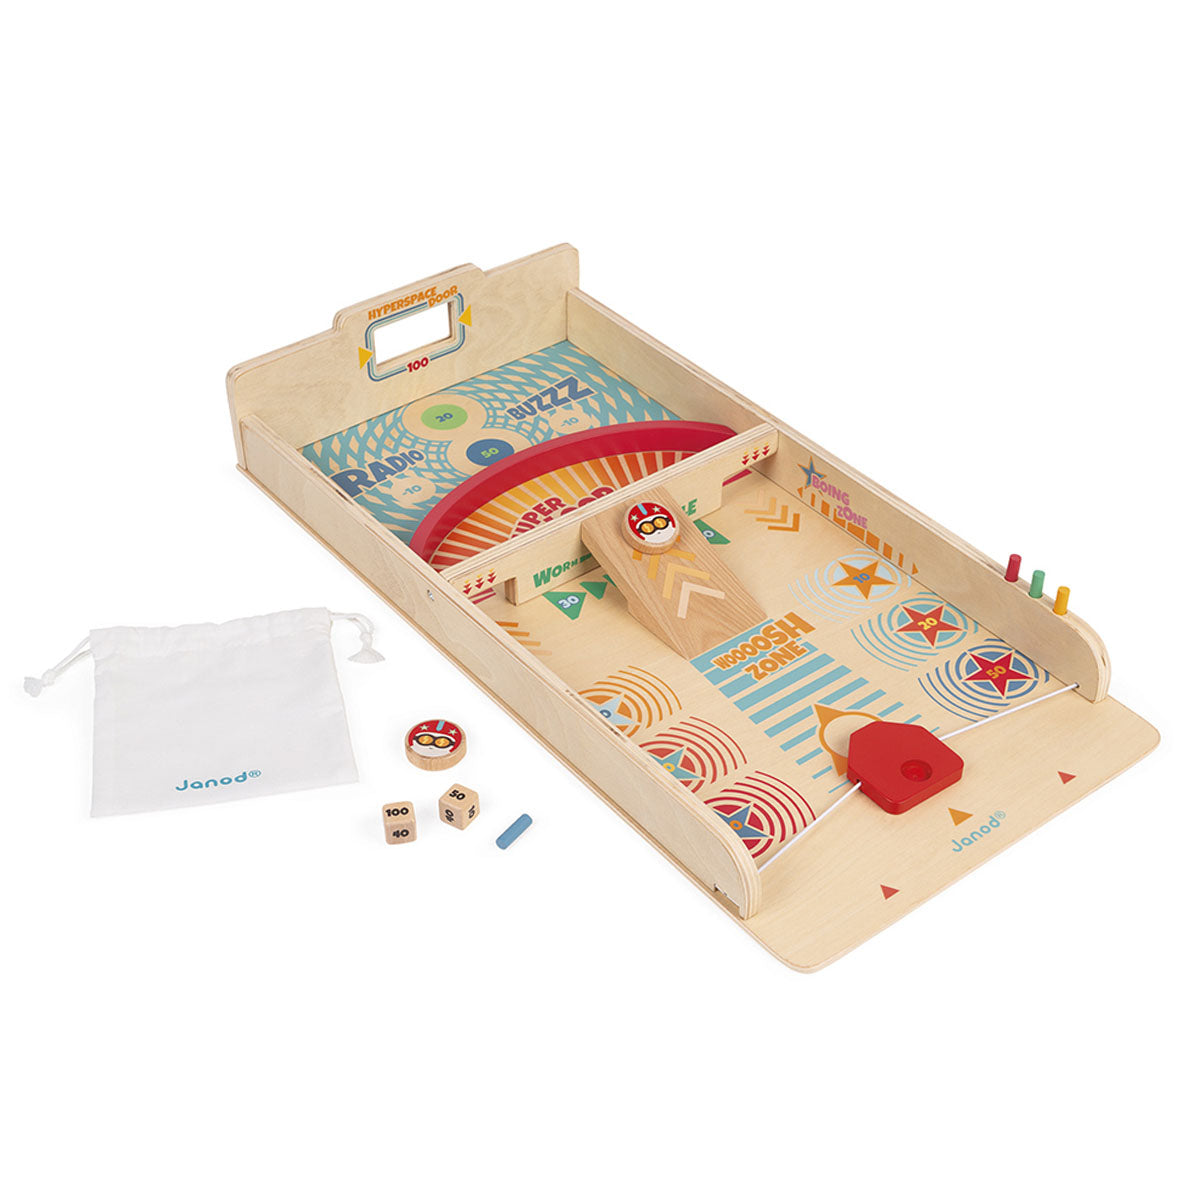 Dit schuifbord spel van het merk Janod is een geweldig spel voor kinderen vanaf 6 jaar. Dit is een houten behendigheidsspel waarbij je het lanceermechanisme gebruikt om de schijf te richten en naar de verschillende kleurzones te sturen. VanZus